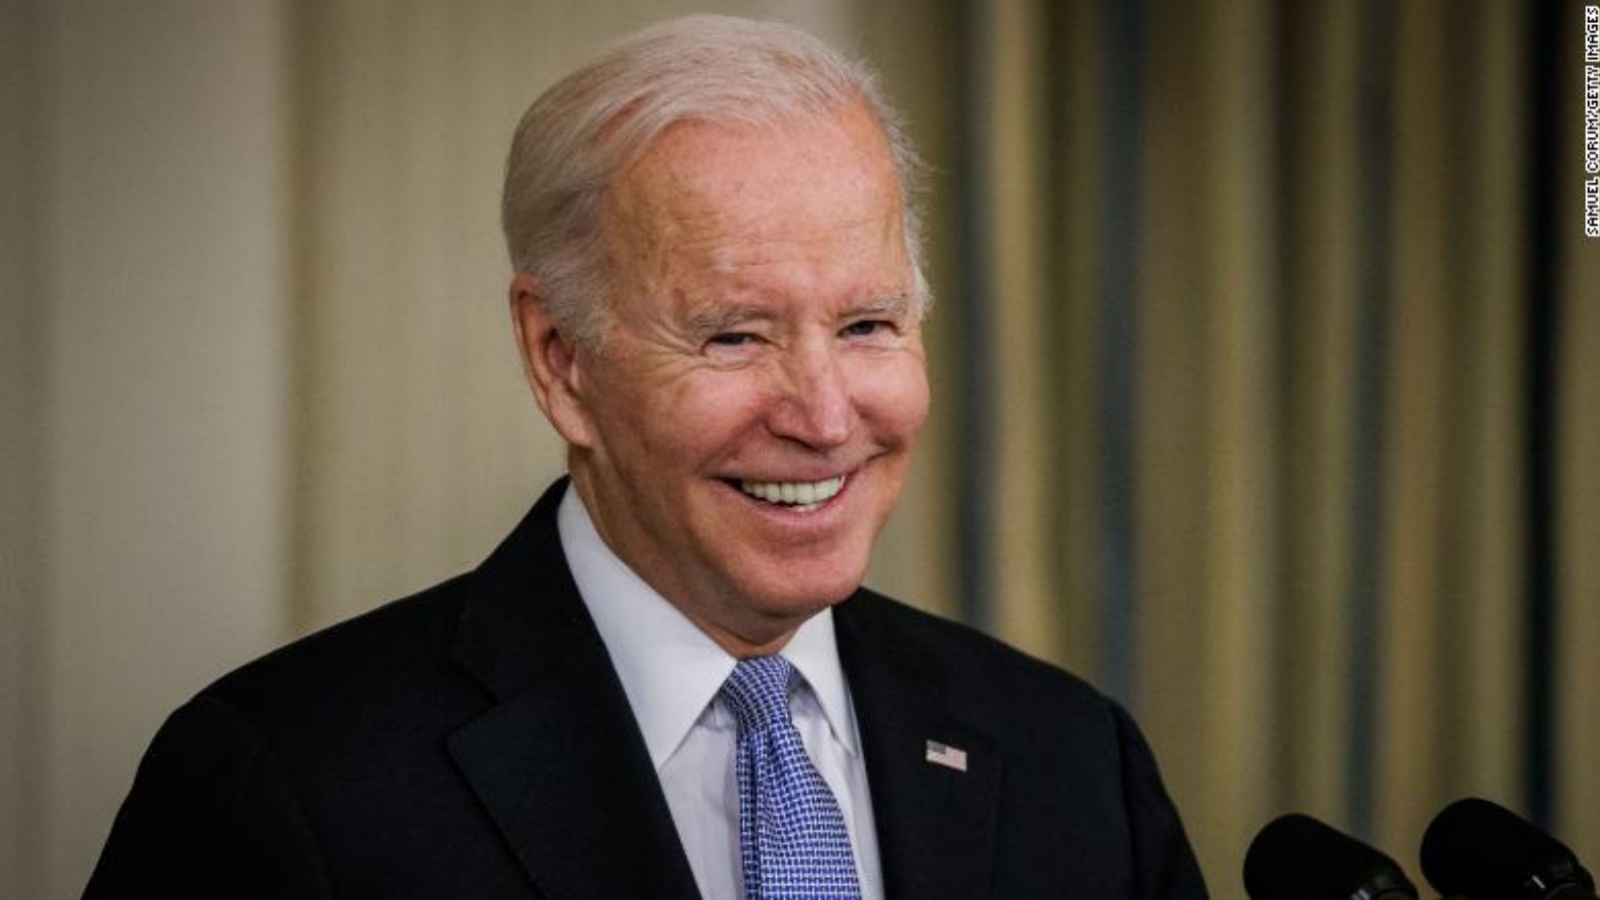 Joe Biden Nu vrea sa se Intalneasca cu Vladimir Putin la Summitul G20